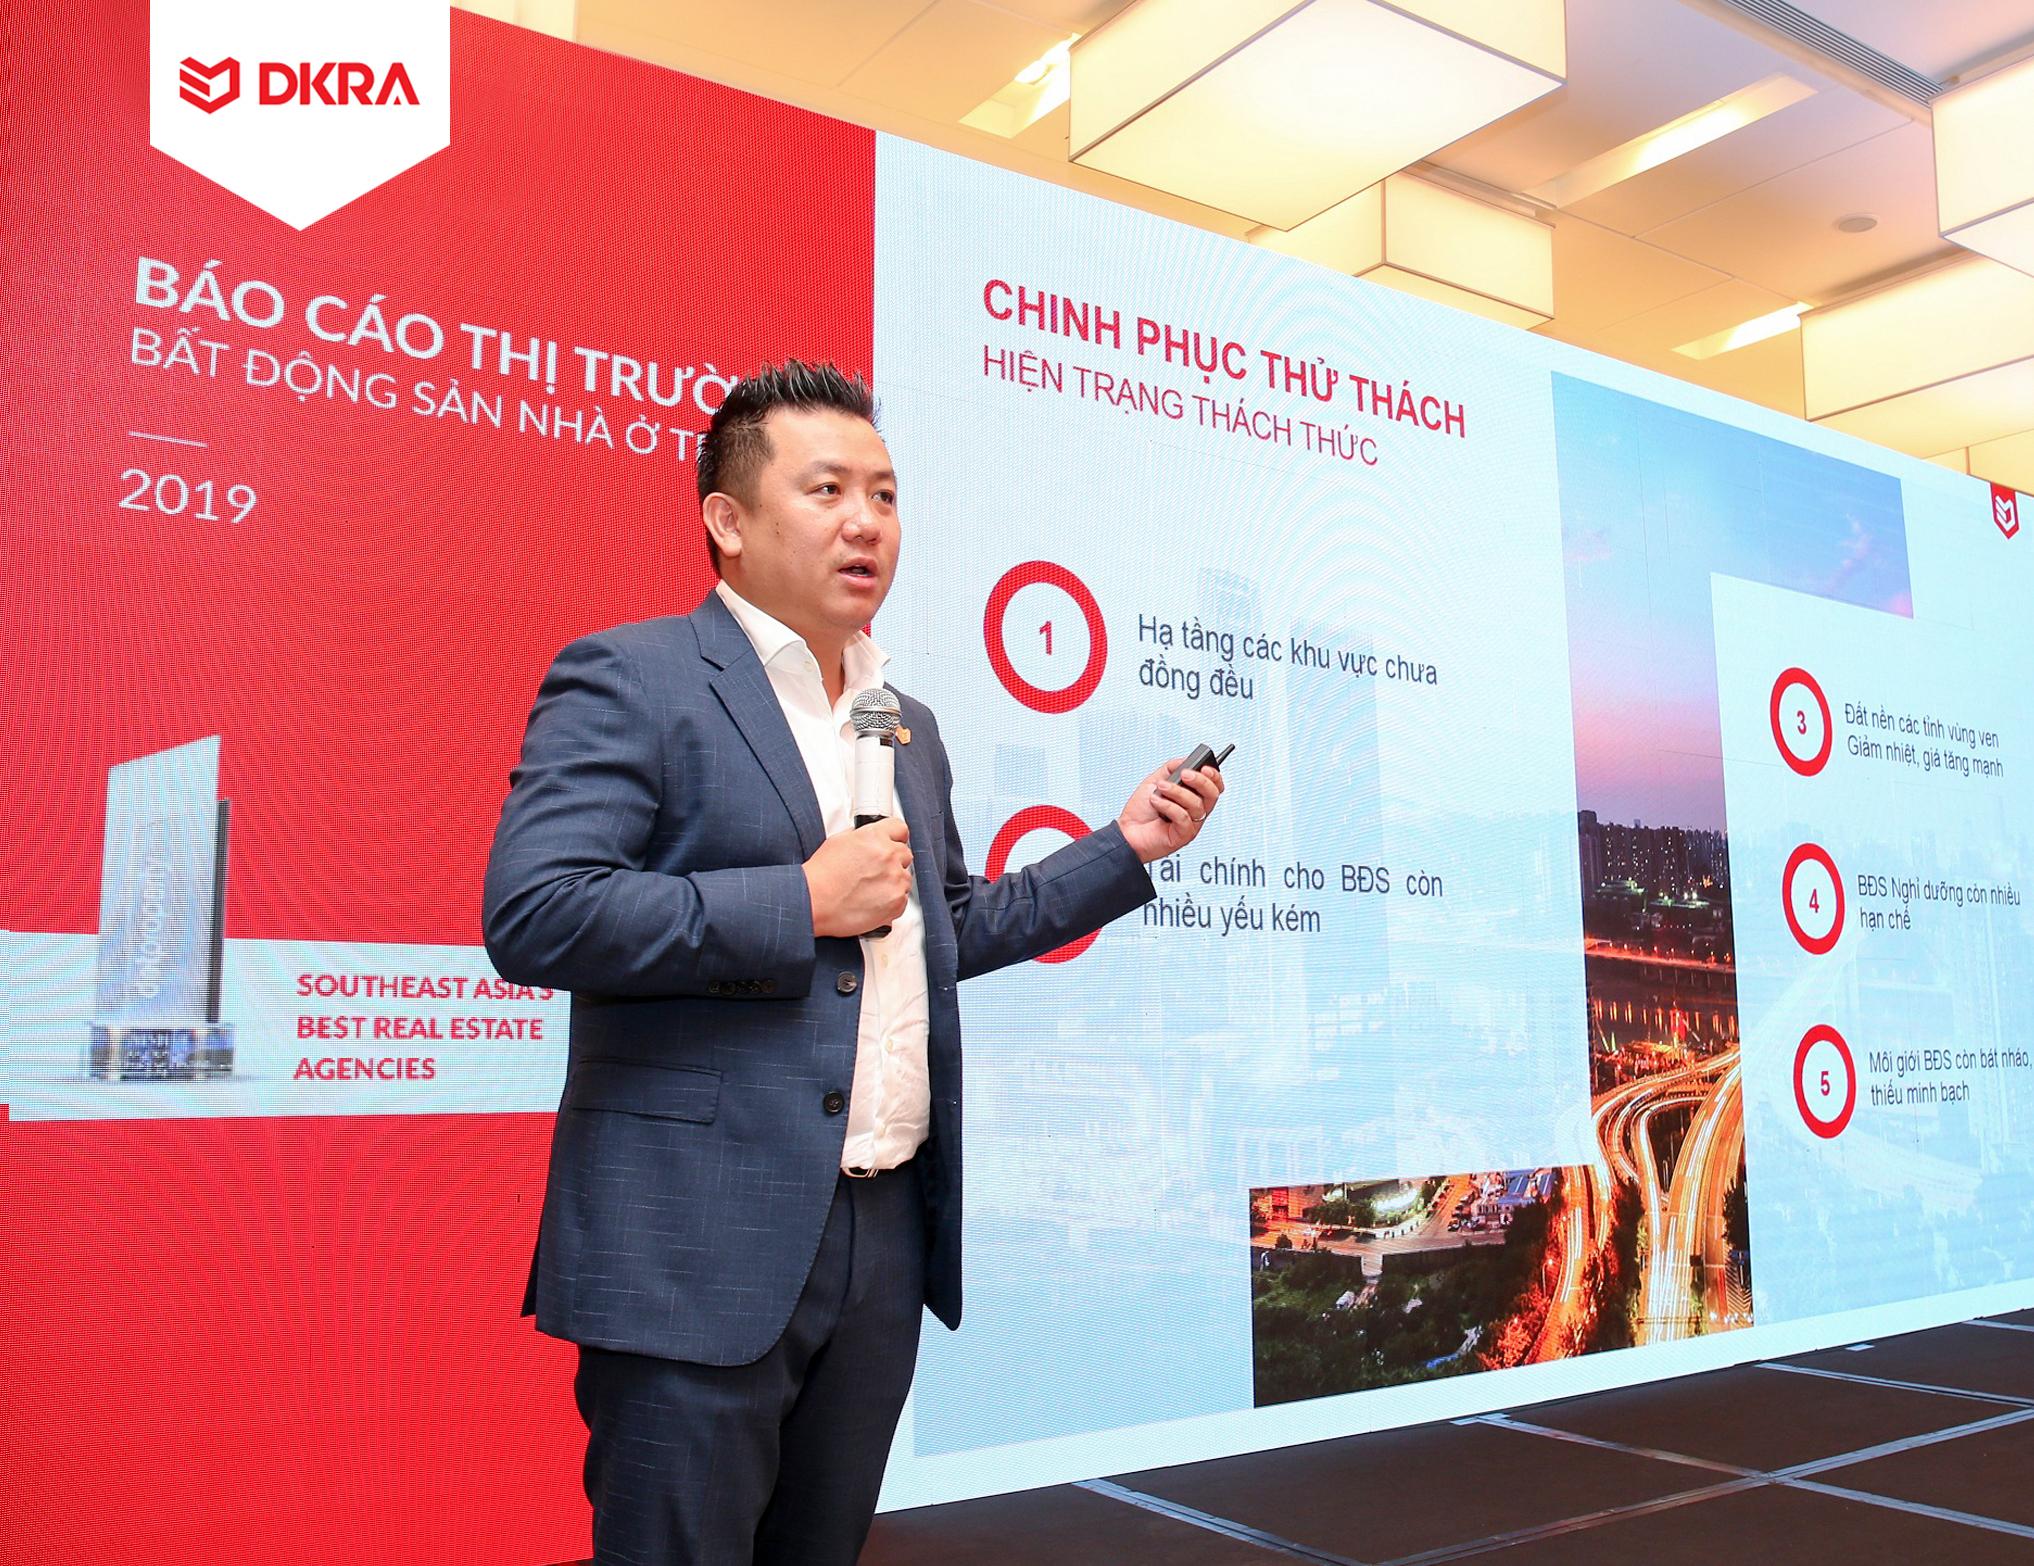 Ông Phạm Lâm - CEO DKRA Vietnam trình bày chủ đề chính “Chinh phục thử thách” tại sự kiện. Theo ông, nguồn cung mới của thị trường năm 2020 không có nhiều đột biến trong khi sức cầu vẫn cao, đặc biệt ở các phân khúc đất nền, căn hộ. Việc thiếu nghiêm túc